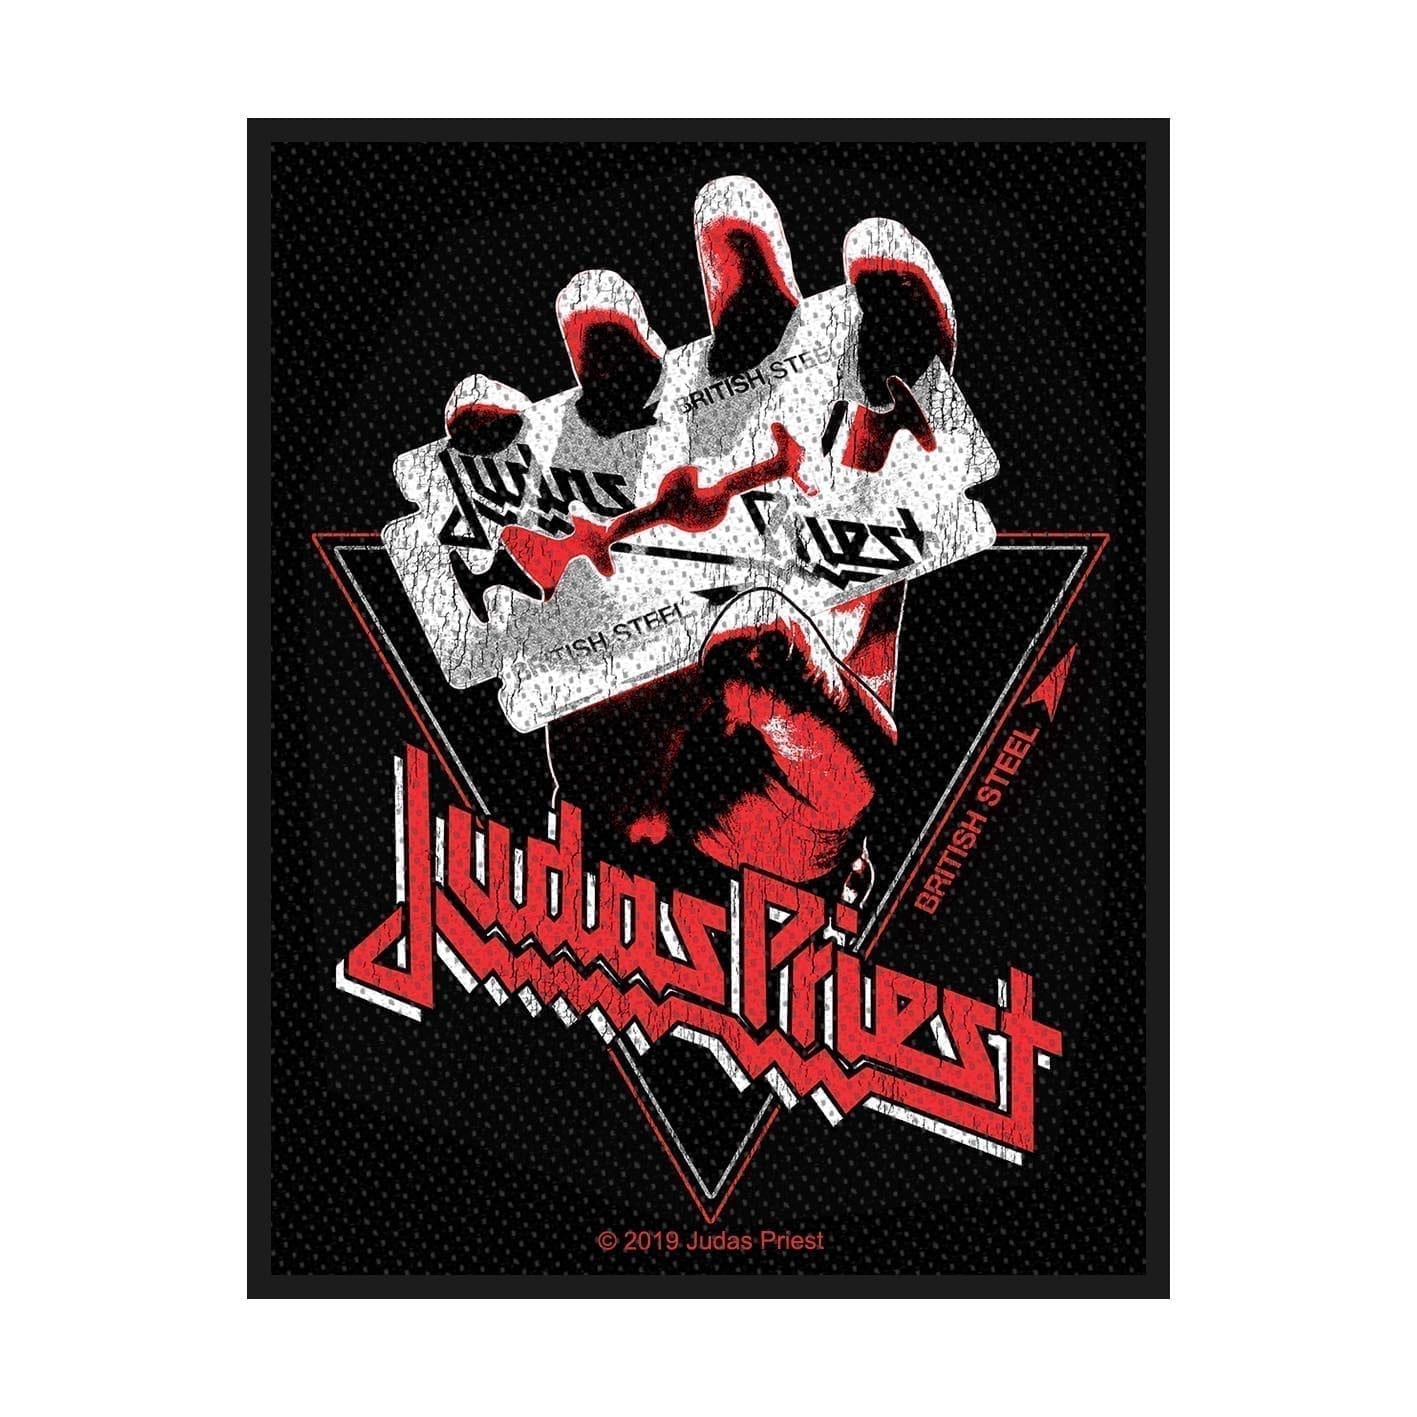 Patch Judas Priest - British Steel Vintage